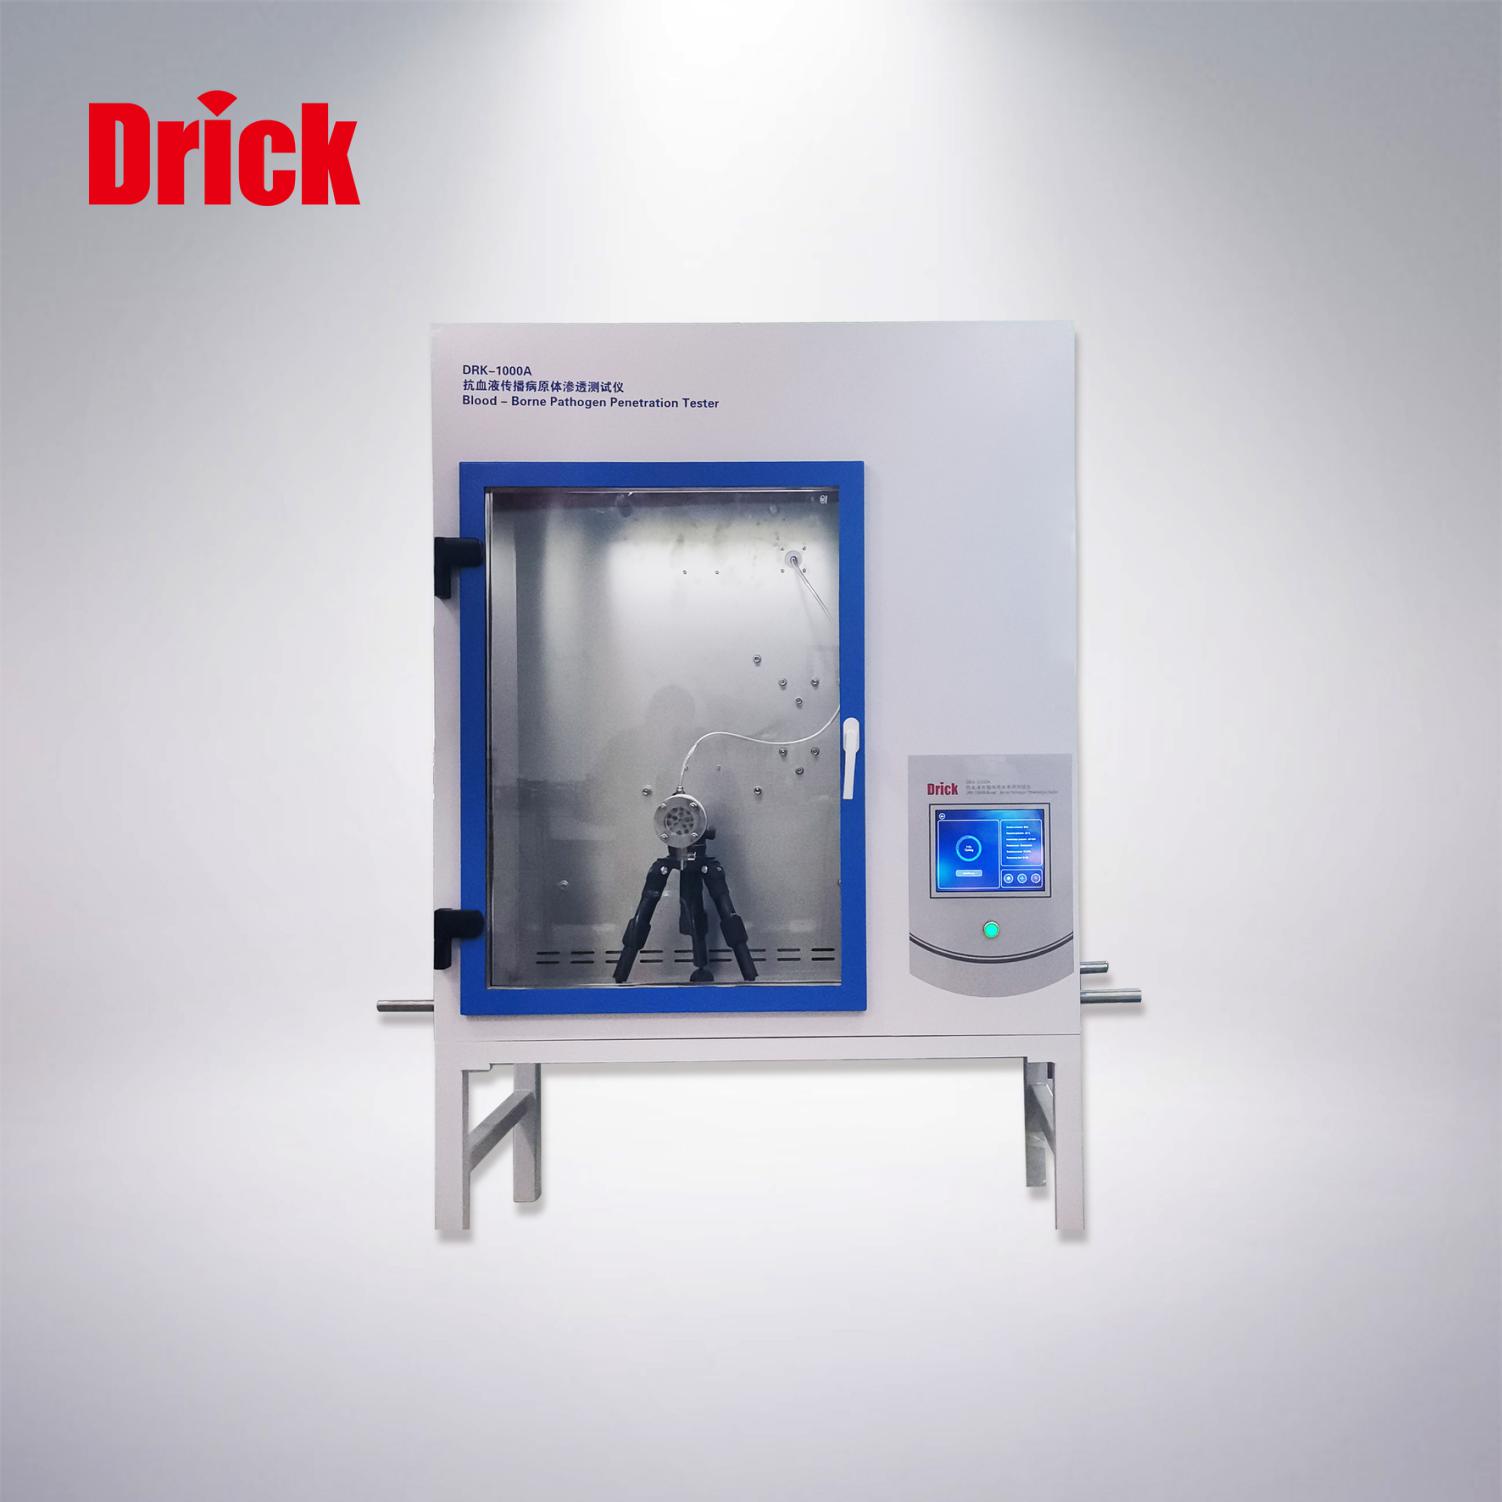 DRK-1000A型抗血液传播病原体渗透测试仪